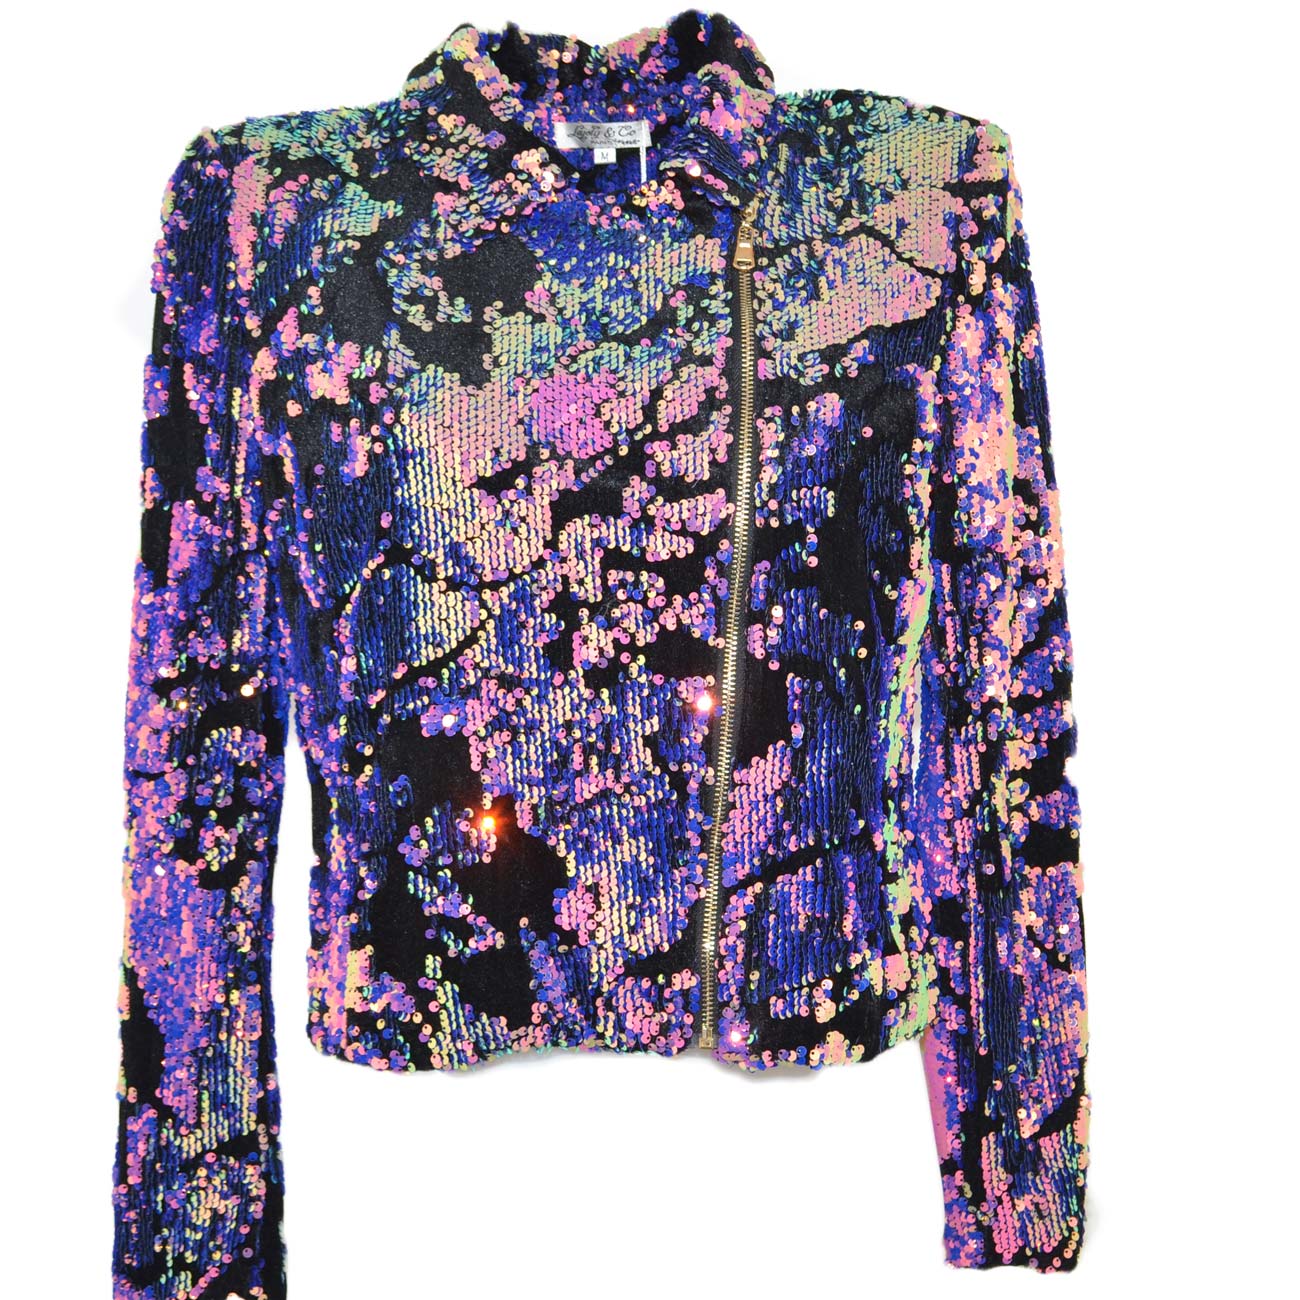 Chiodo giacca donna corto di paillettes colorate multicolor riflettenti avvitato sim fit con cintura regolabile in vita .